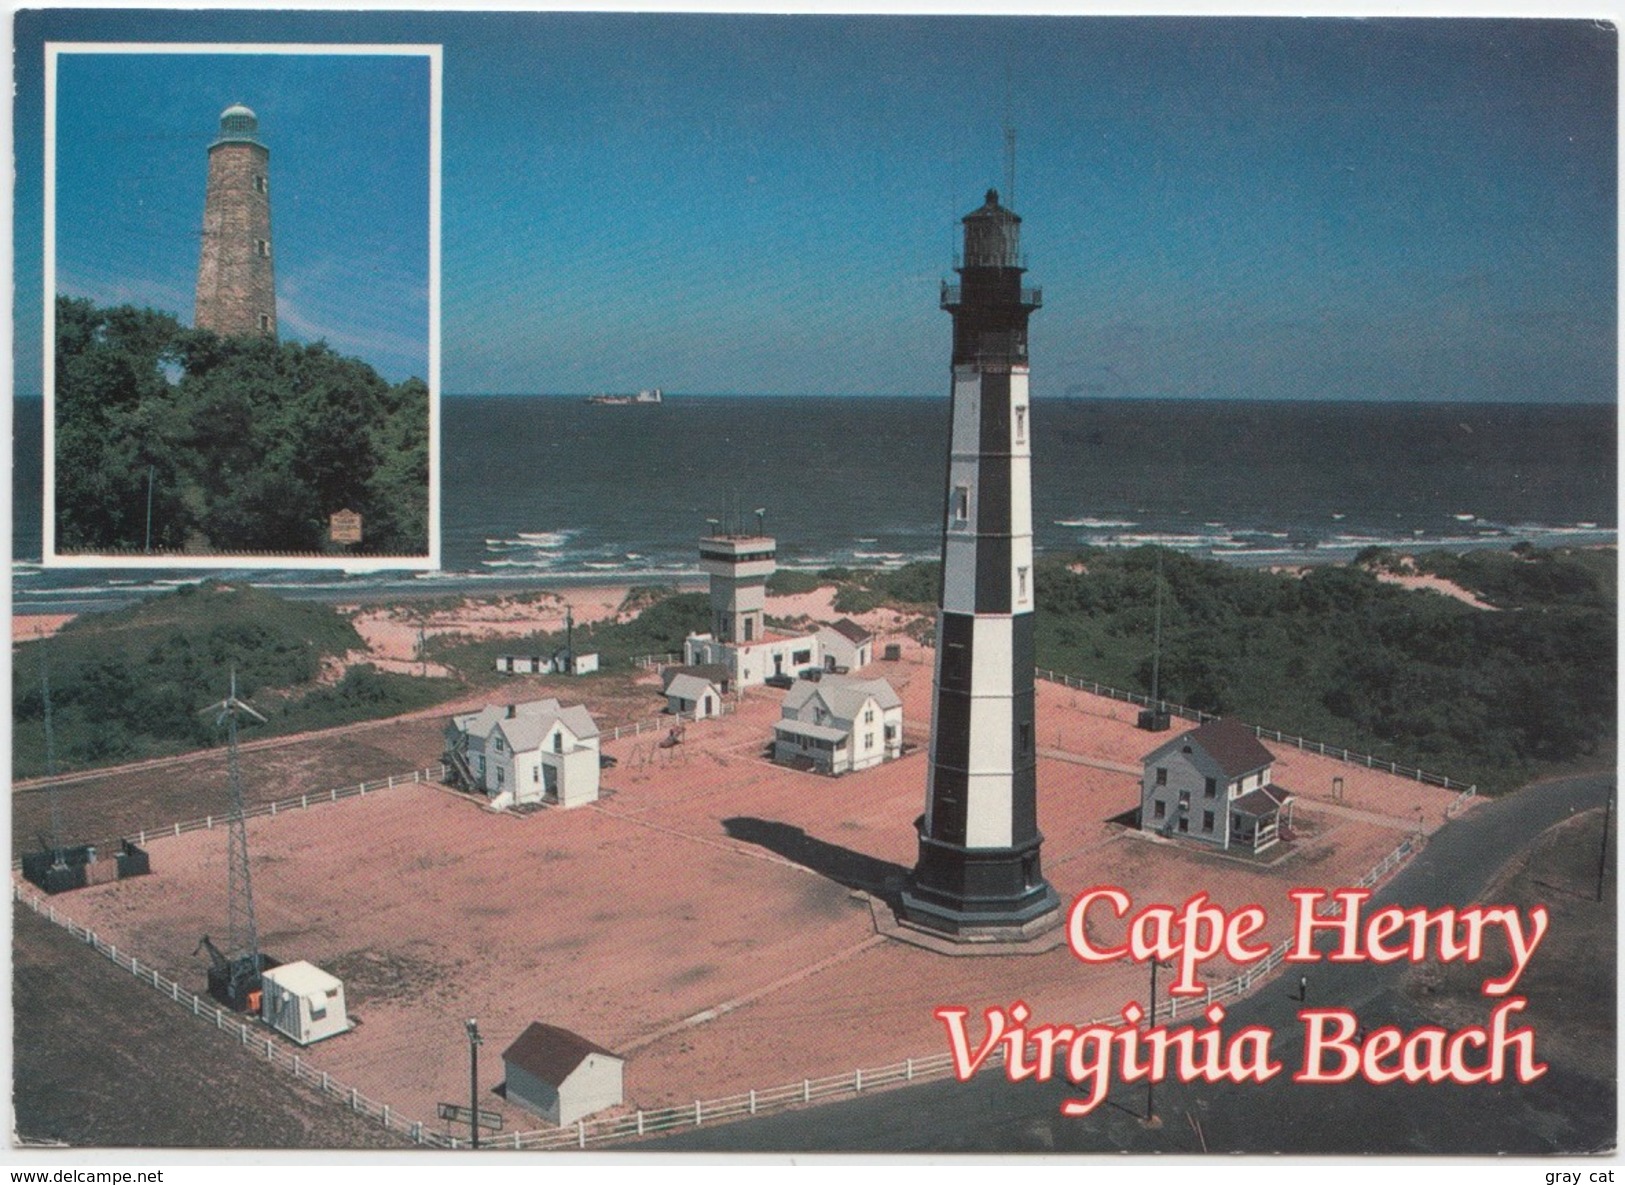 Cape Henry Lighthouses, Virginia Beach, 1994 Used Postcard [20703] - Virginia Beach